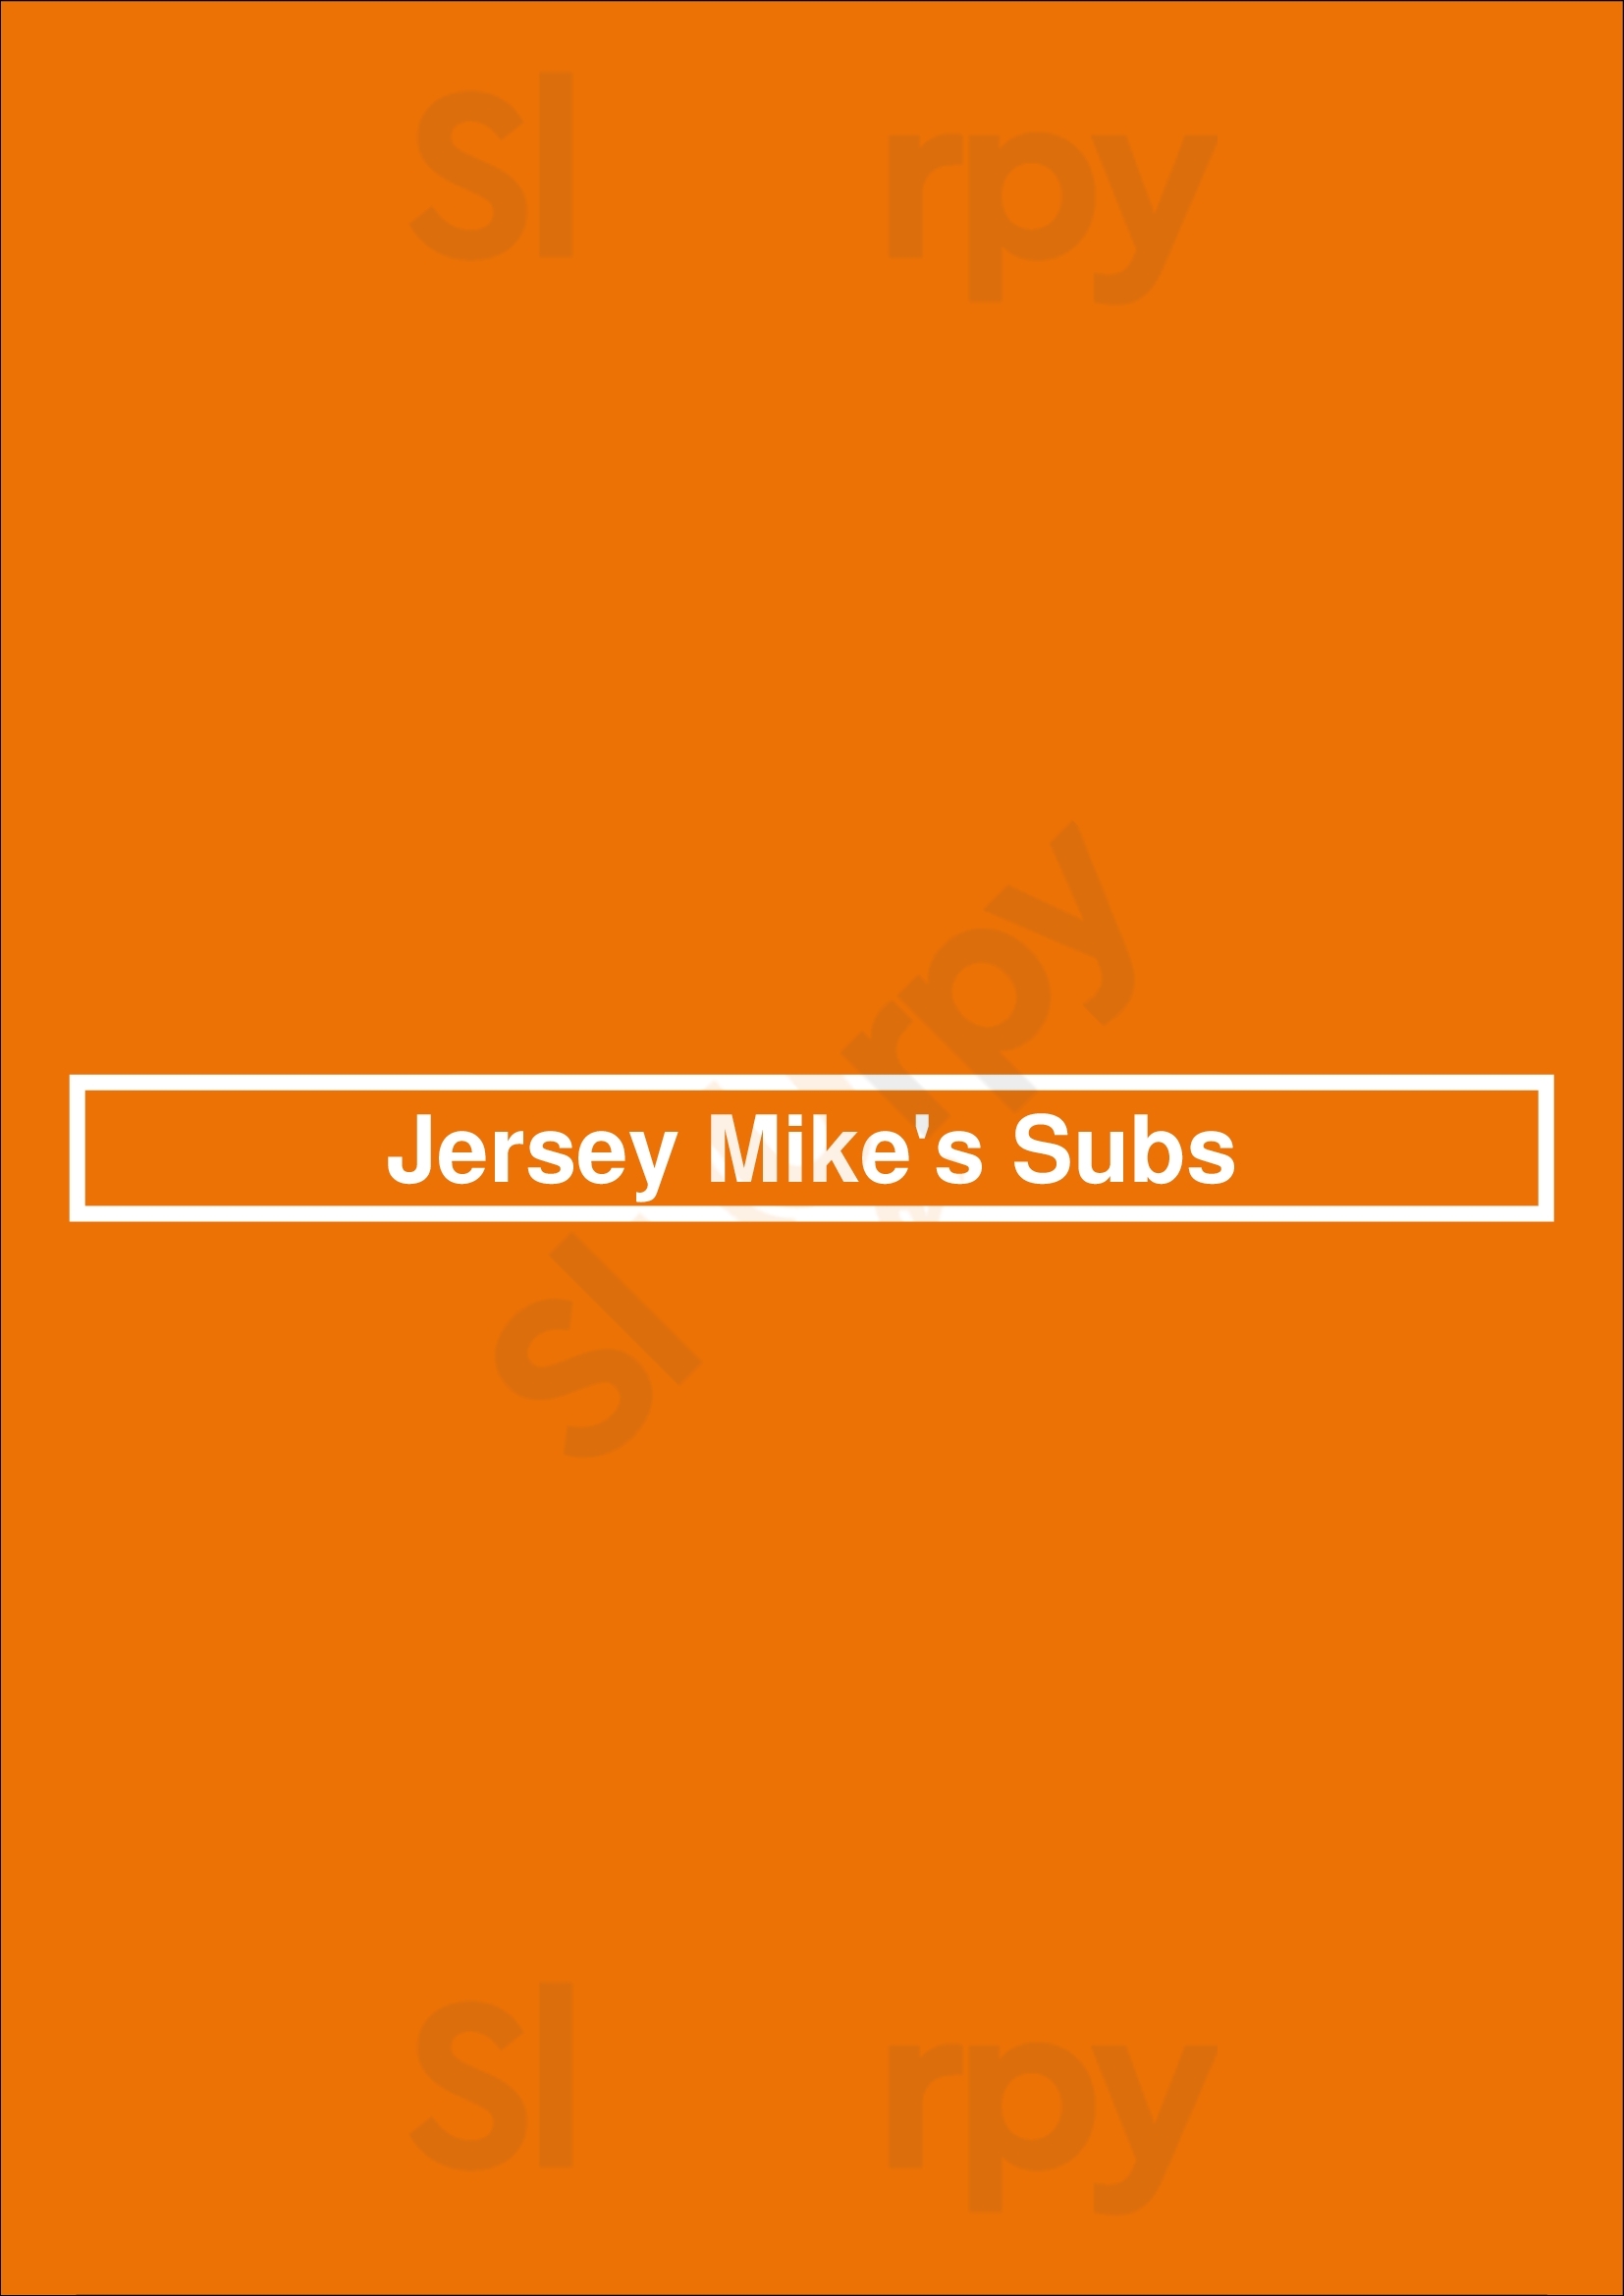 Jersey Mike's Subs Austin Menu - 1